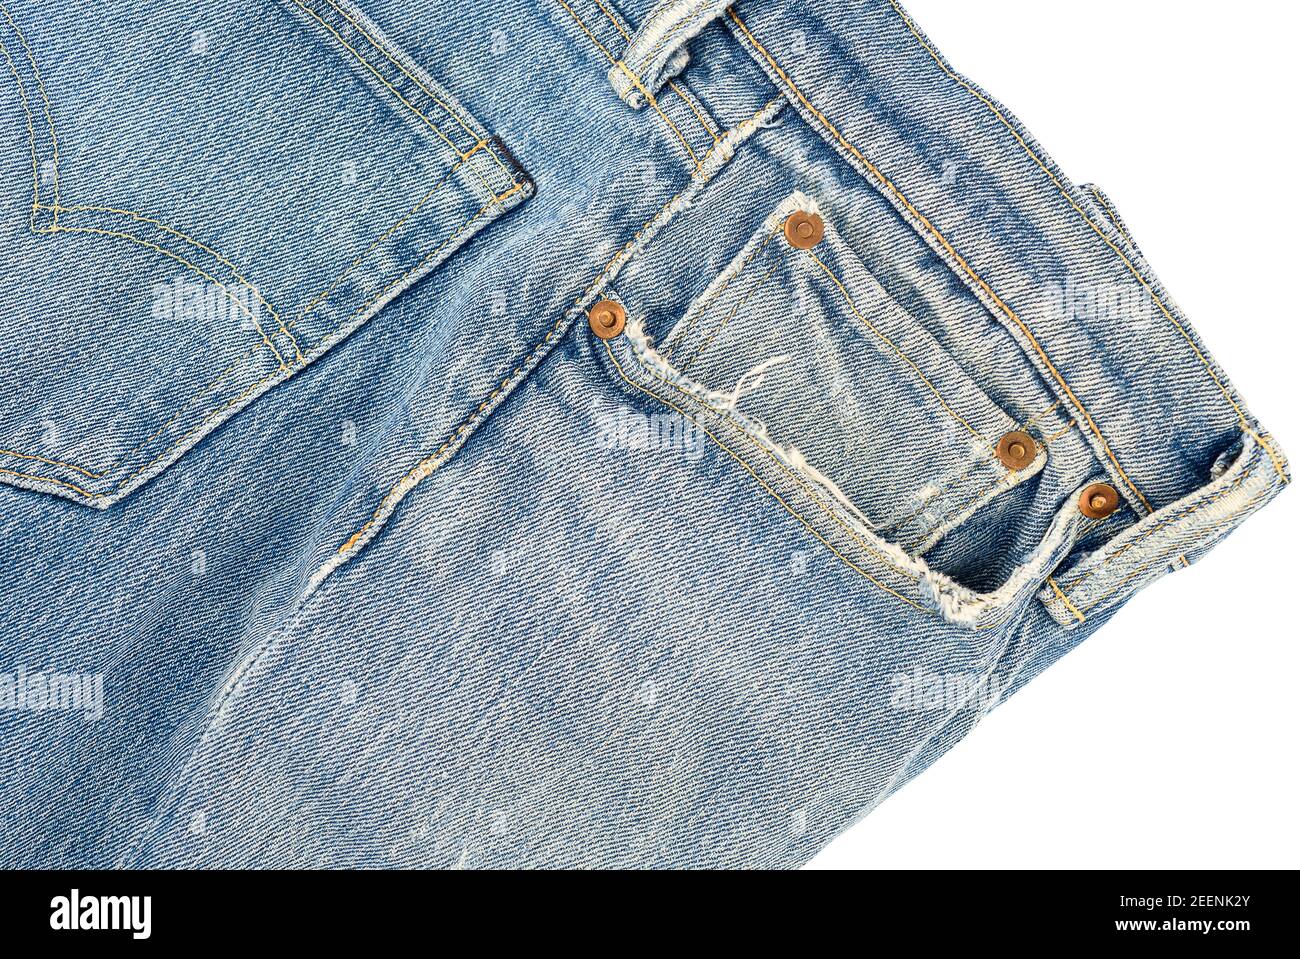 Un bolsillo de jeans viejos, hilos deshilachados y sueltos. Primer plano fondo blanco Fotografía de stock - Alamy